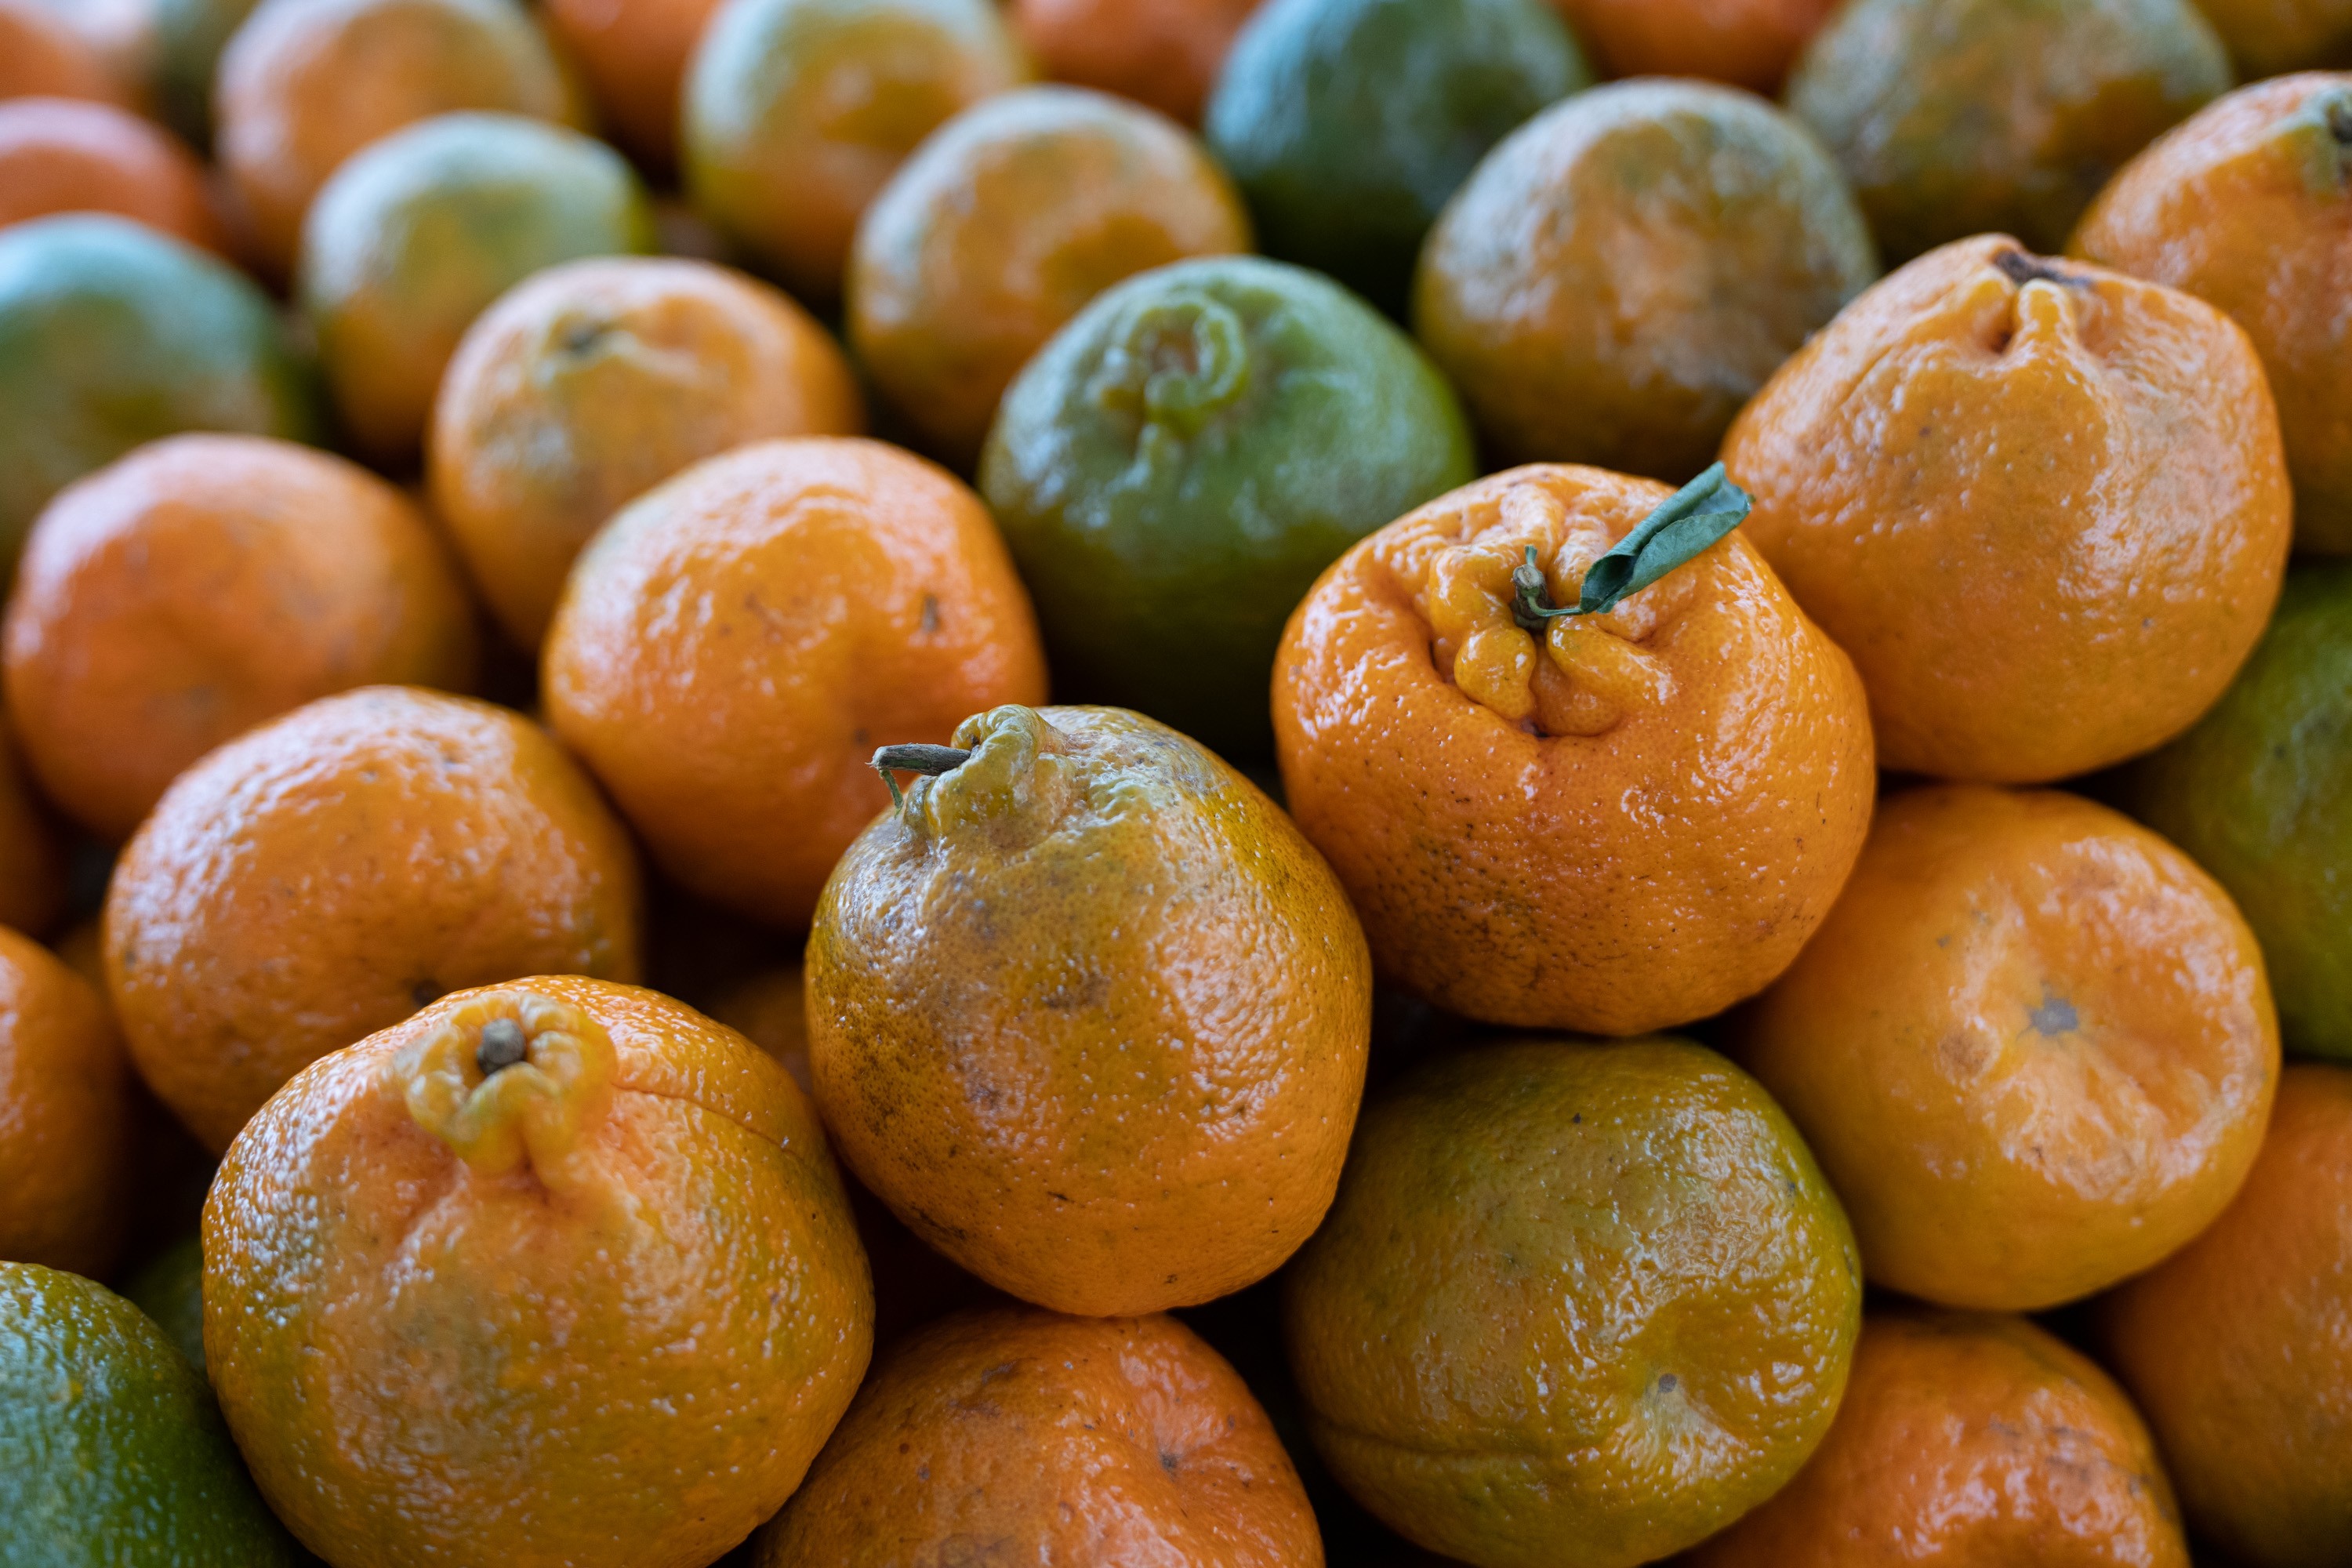 Ponkan, mexerica, morgote, mimosa ou bergamota? Entenda nomes usados para referenciar tangerina